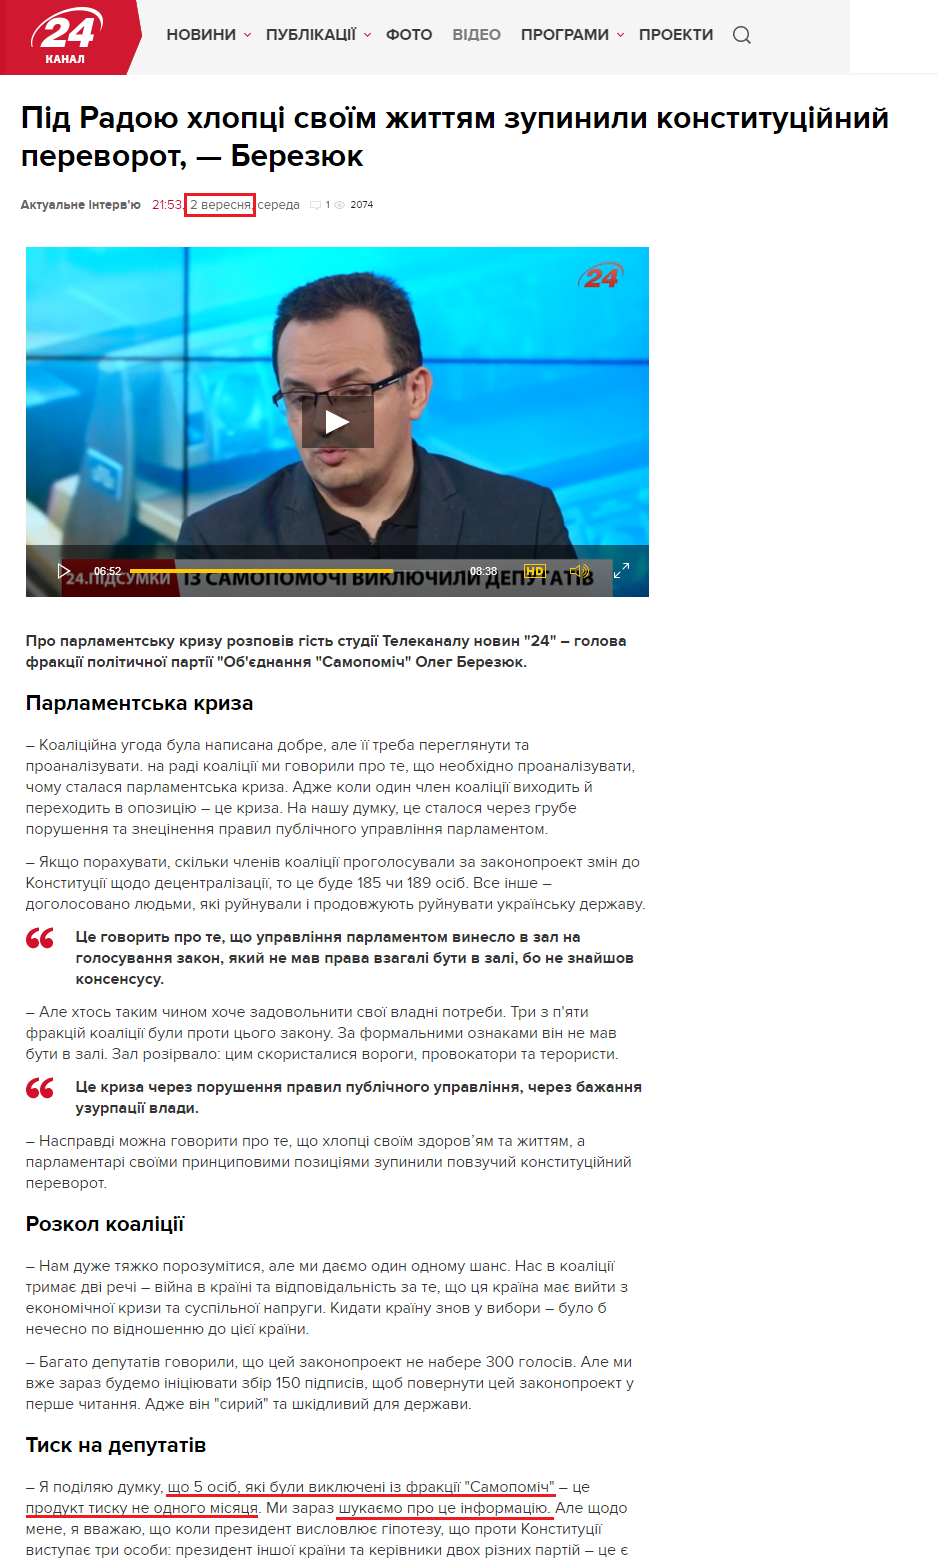 http://24tv.ua/news/showNews.do?pid_radoyu_hloptsi_svoyim_zhittyam_zupinili_konstitutsiyniy_perevorot__berezyuk&objectId=608044